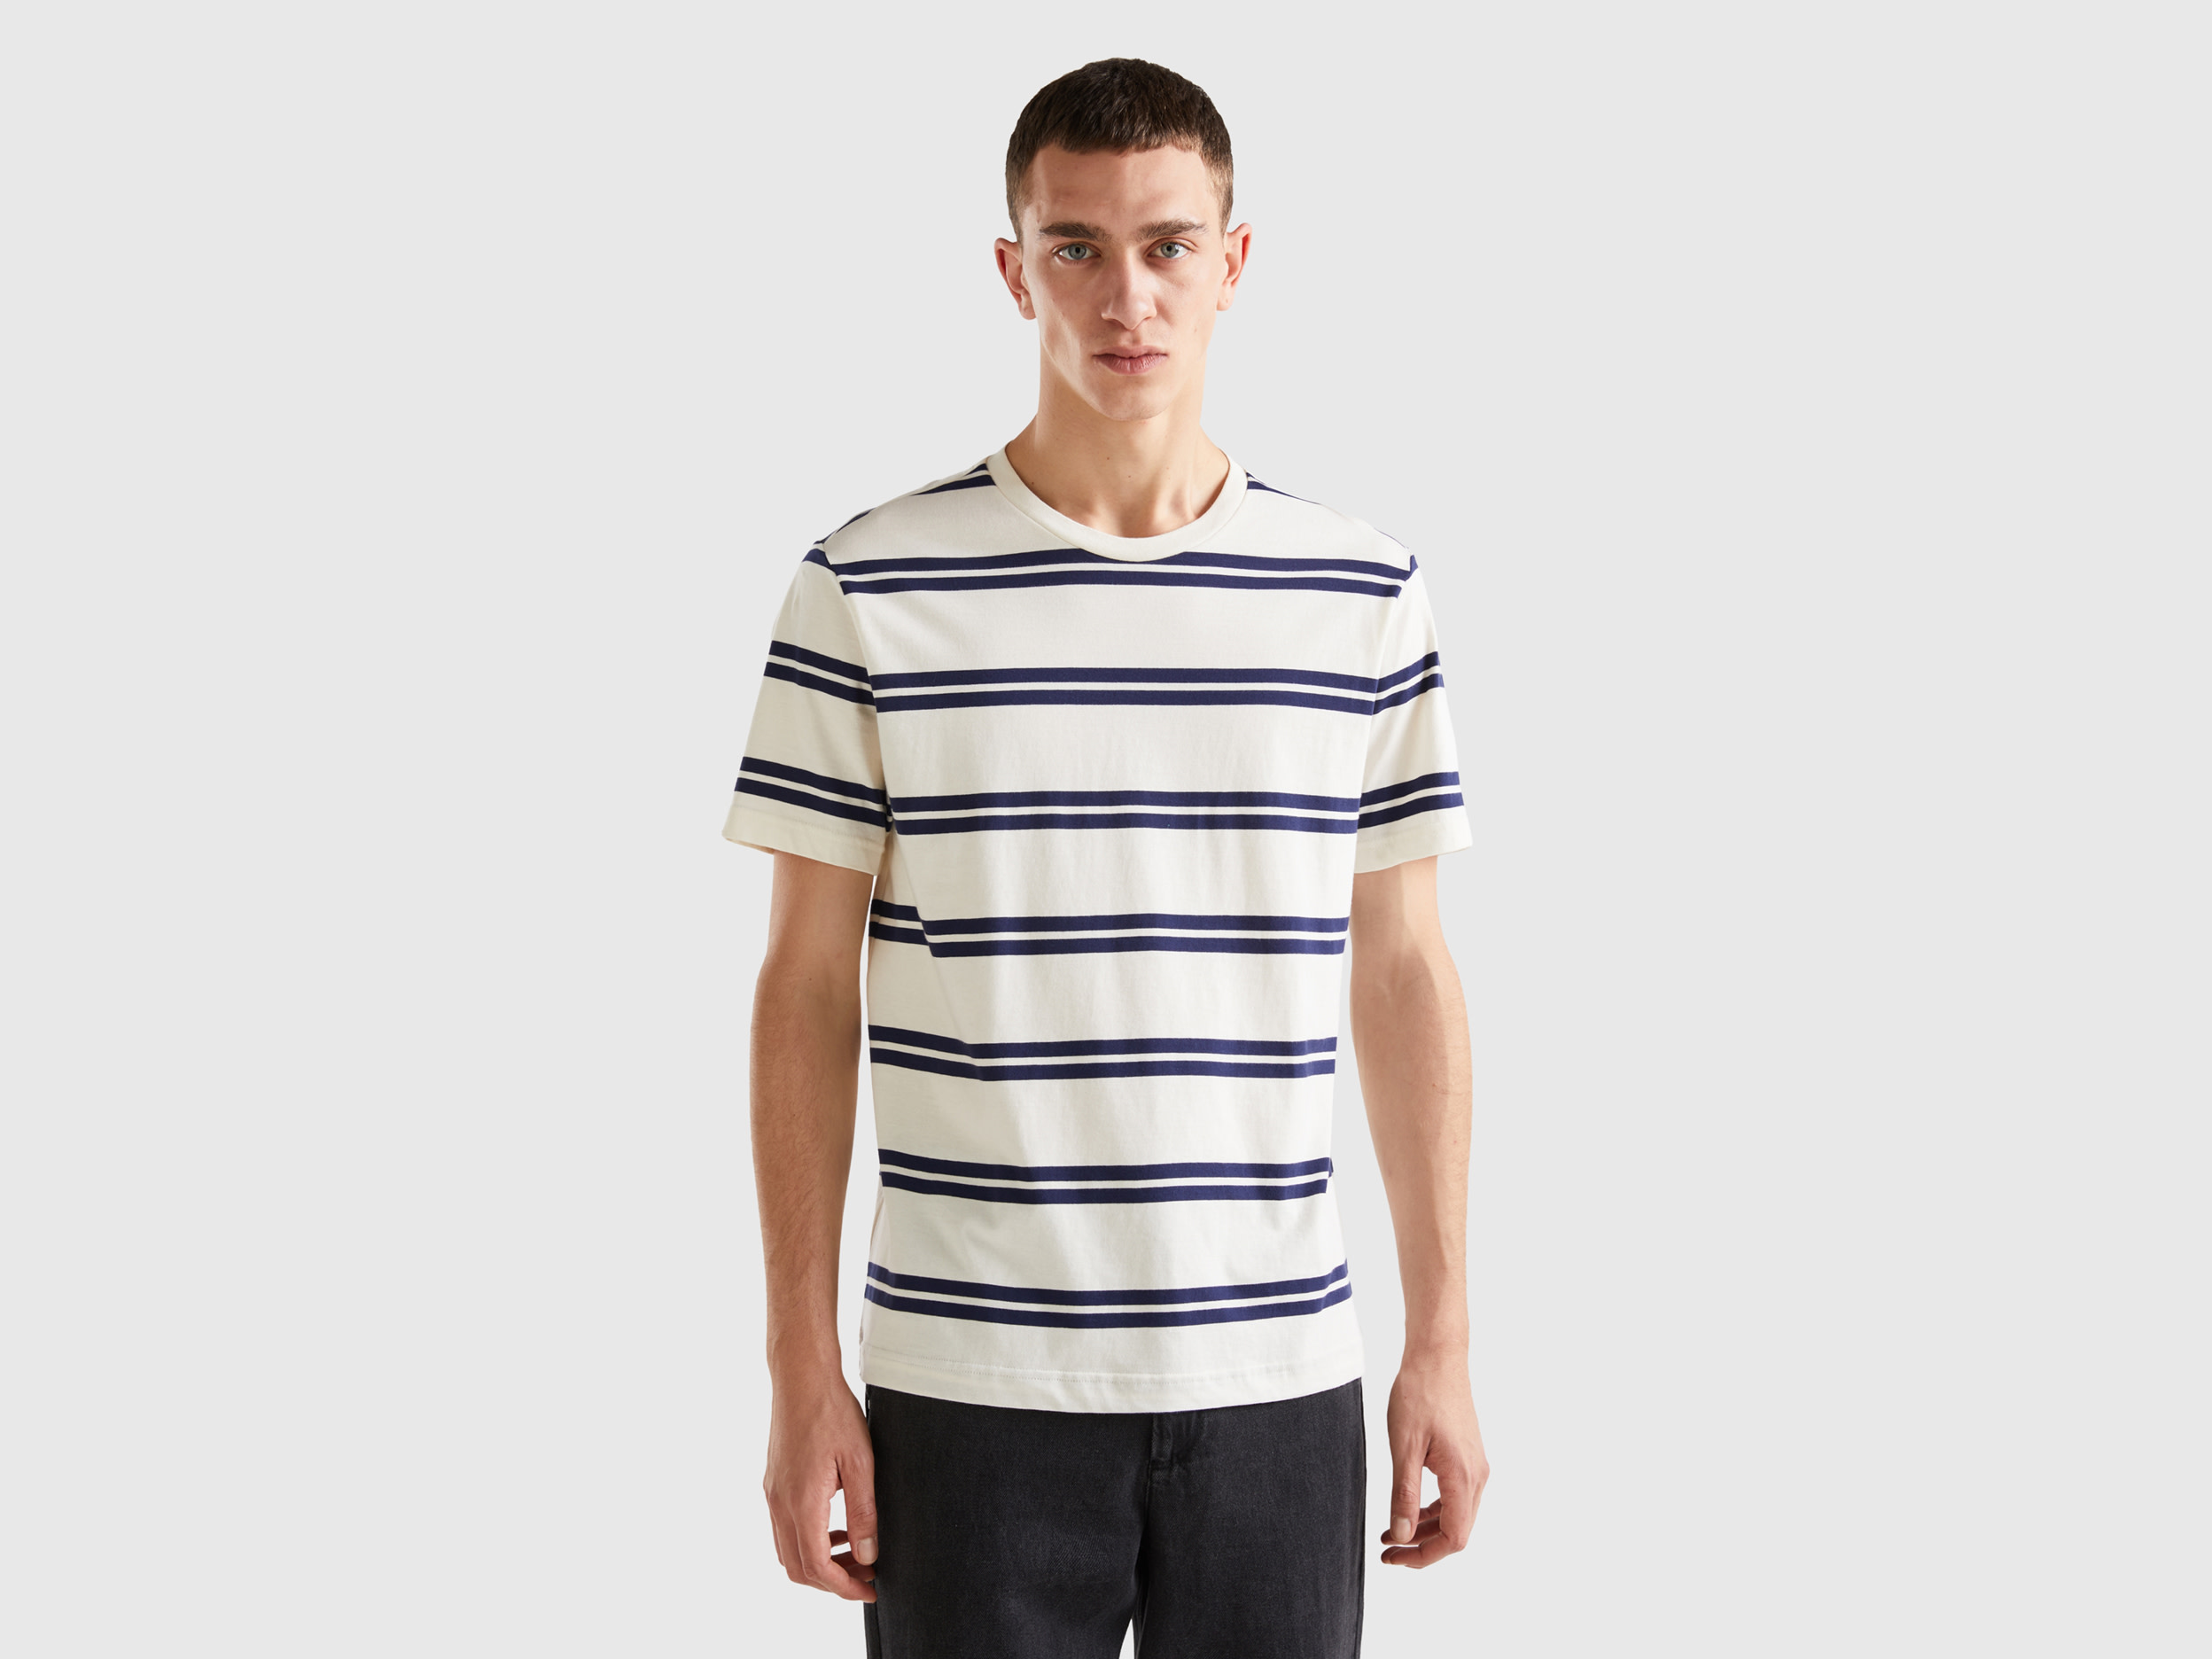 Benetton, Striped Short Sleeve T-shirt, size S, White, Men